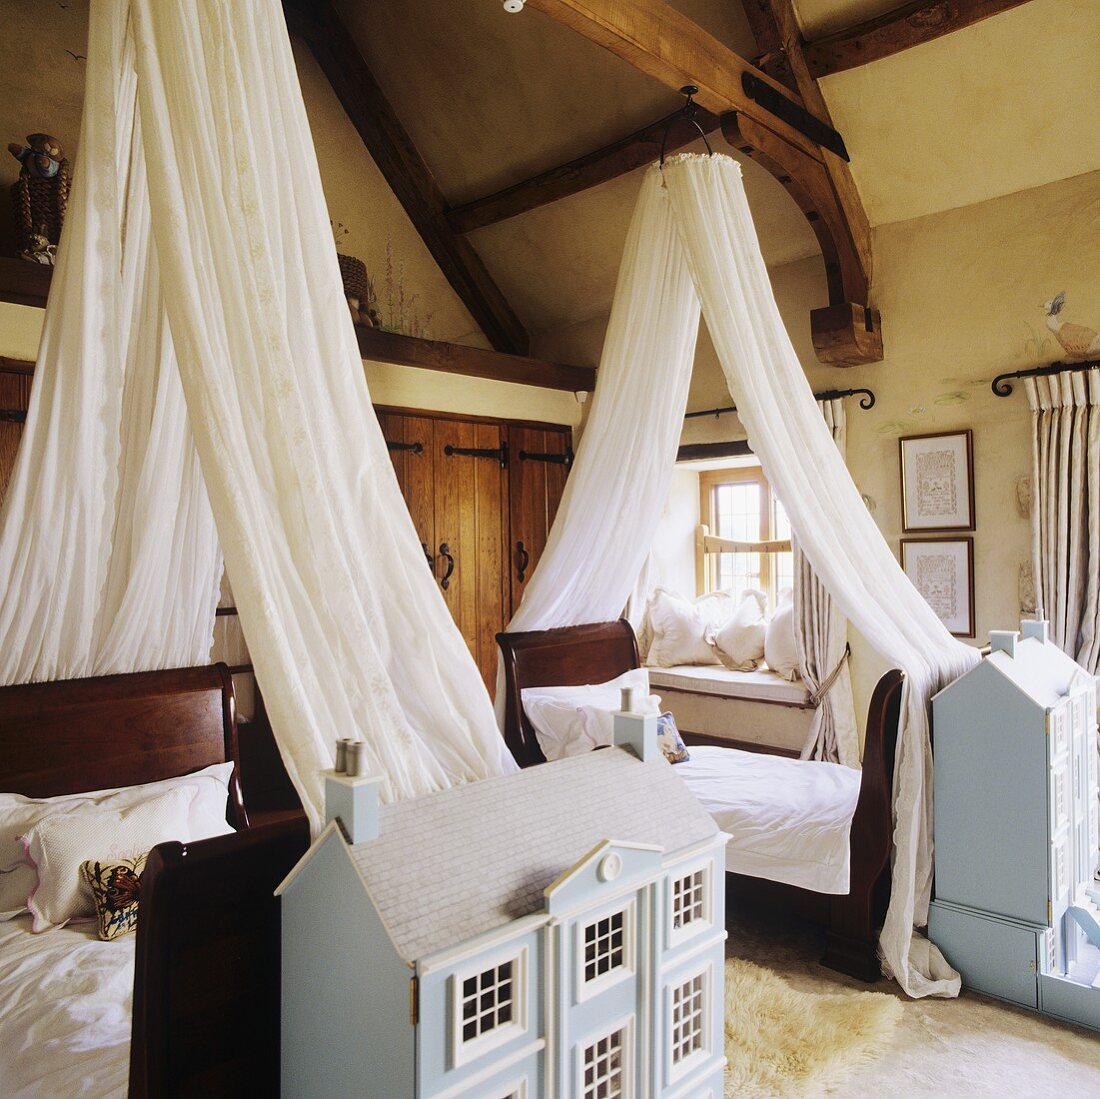 Einzelbetten mit weißem Baldachin und Architekturmodelle im rustikalem Schlafraum